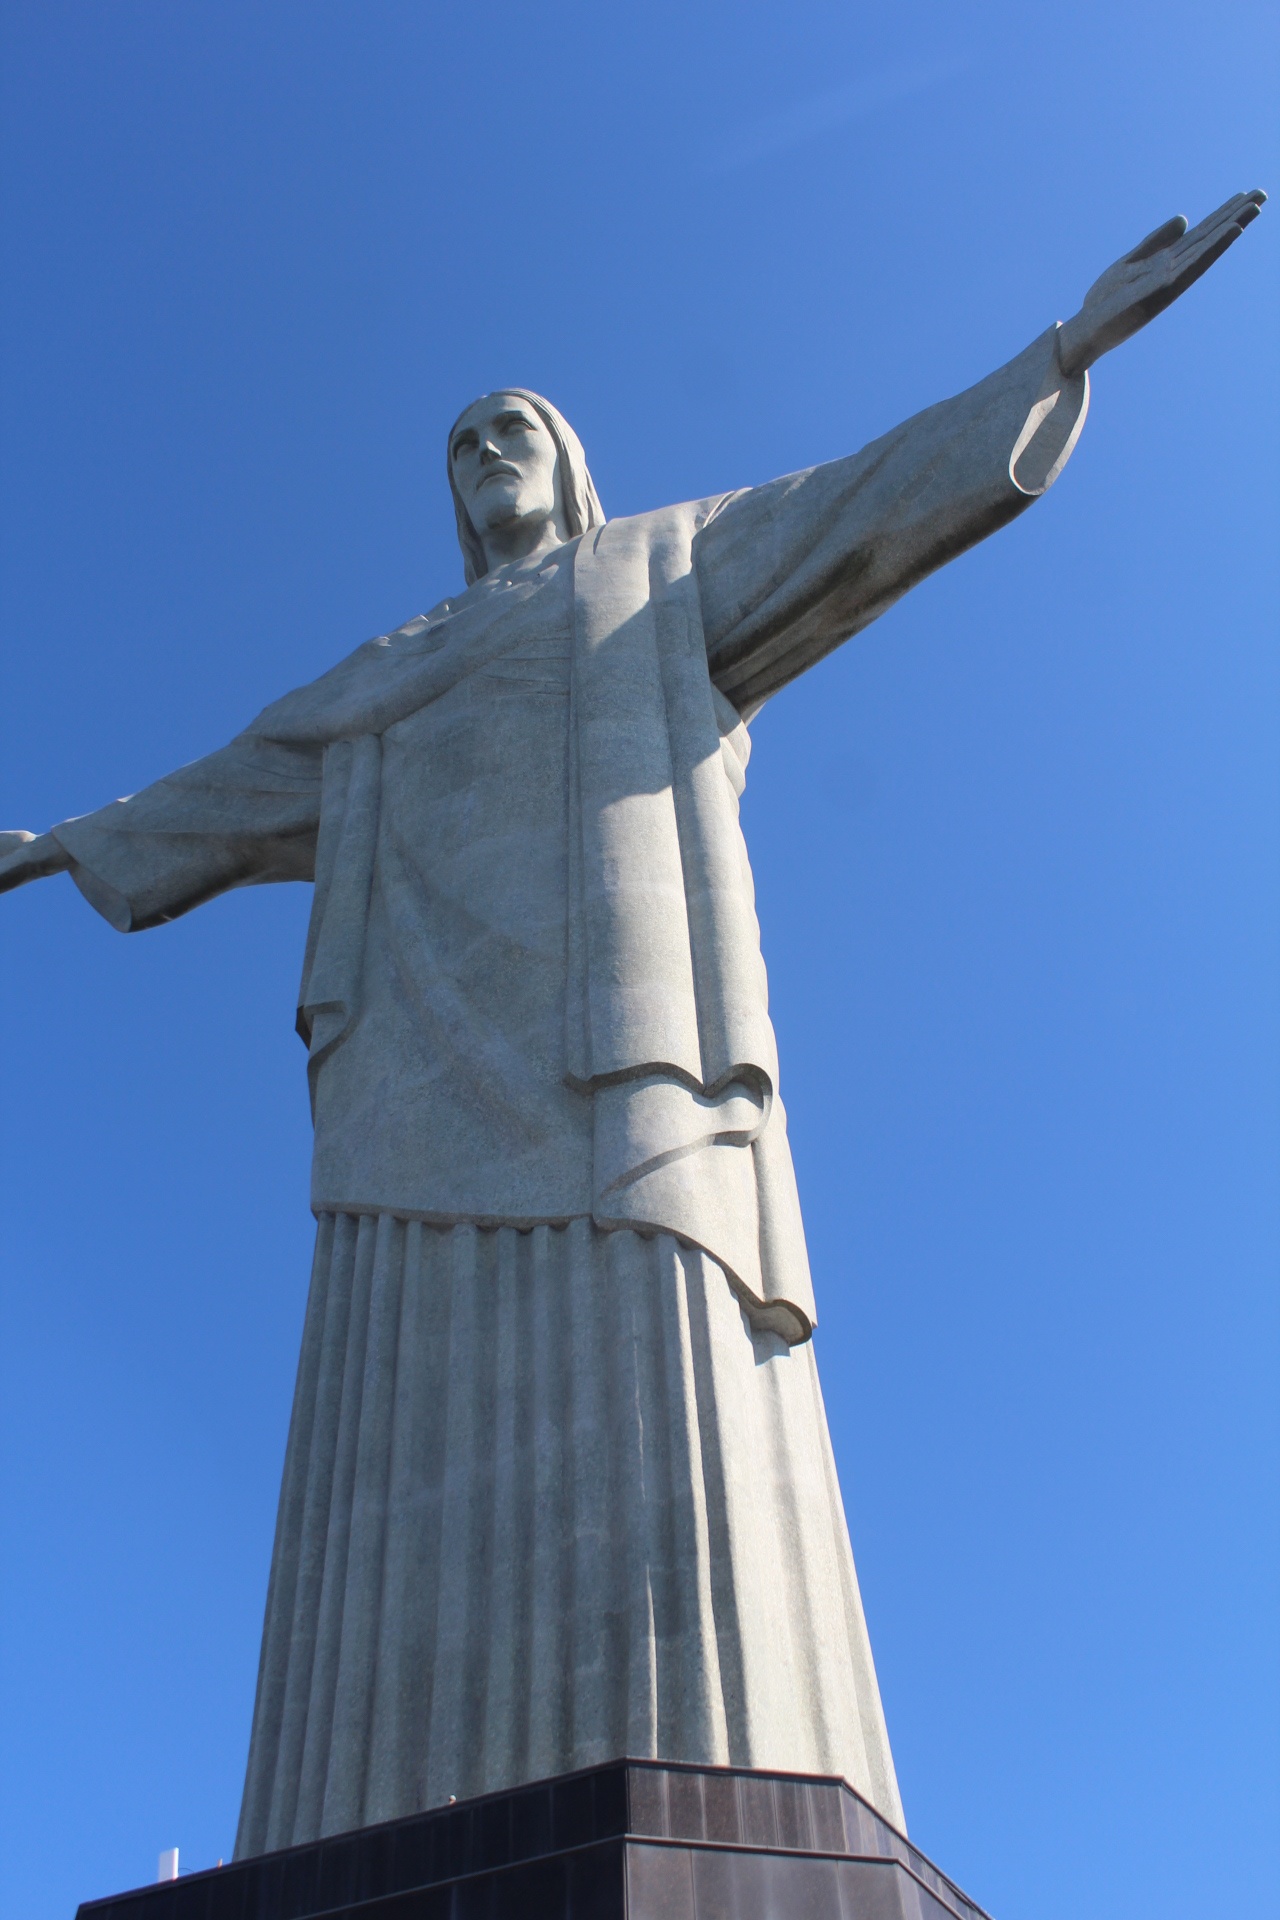 リオデジャネイロの奇跡 コルコバードの丘のキリスト像はなぜあの場所にあるのか 桑原淳 Junkuwabara 旅人美容師世界一周1000人カット 超超エリート株式会社代表